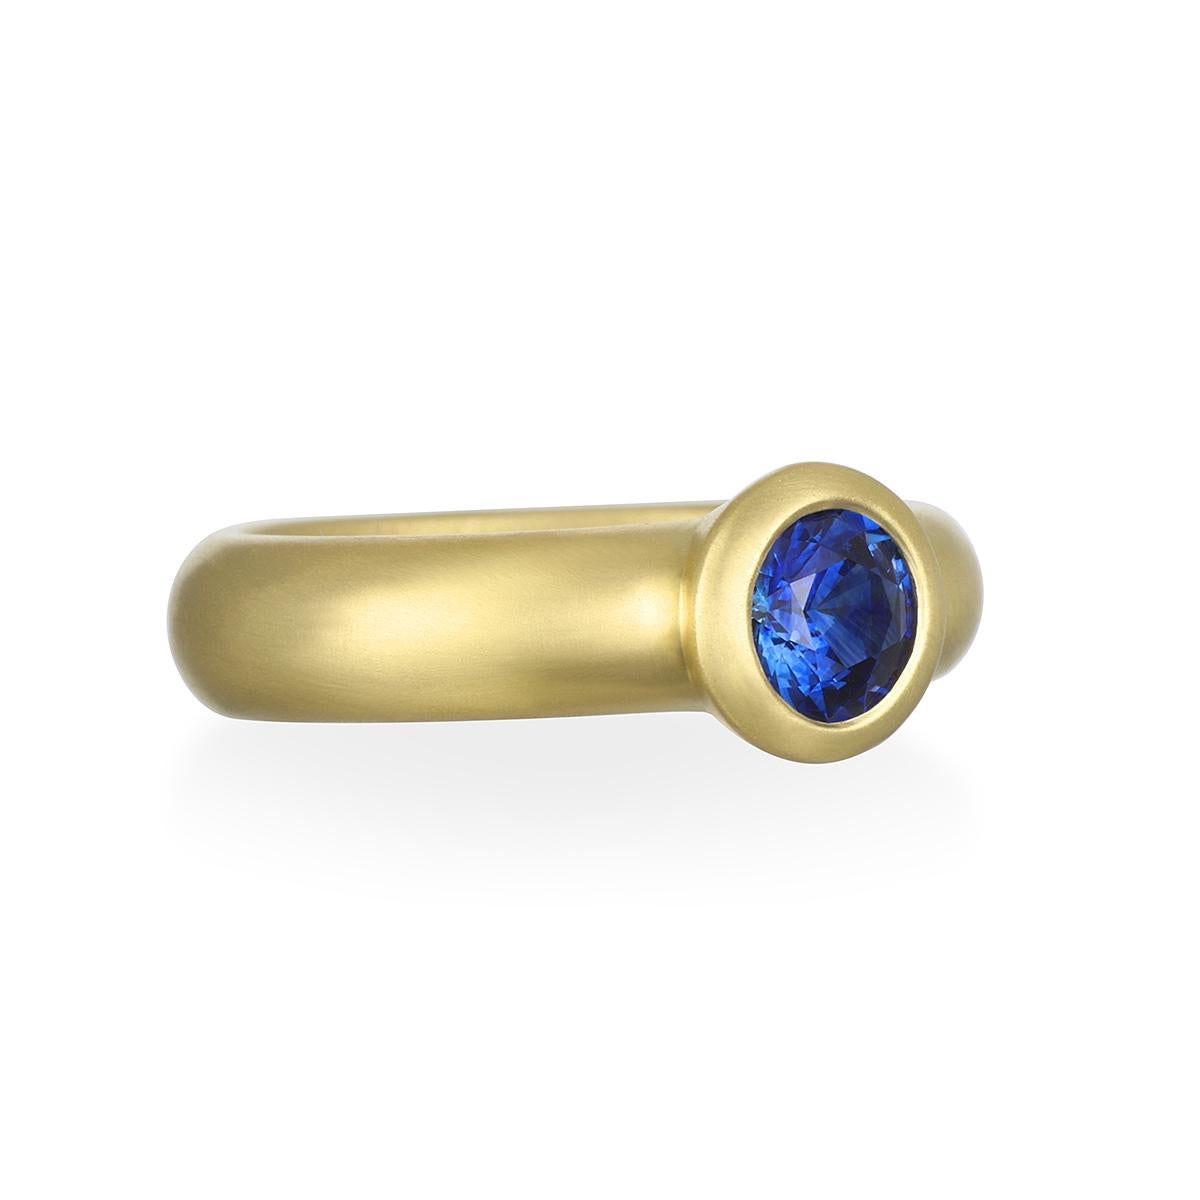 D'une belle nuance de bleu vif, cette bague ronde à chaton en saphir bleu de Ceylan est sertie en or 18 carats* avec une finition mate pour un look épuré et intemporel. Elle peut être portée seule comme une pièce unique ou empilée avec d'autres